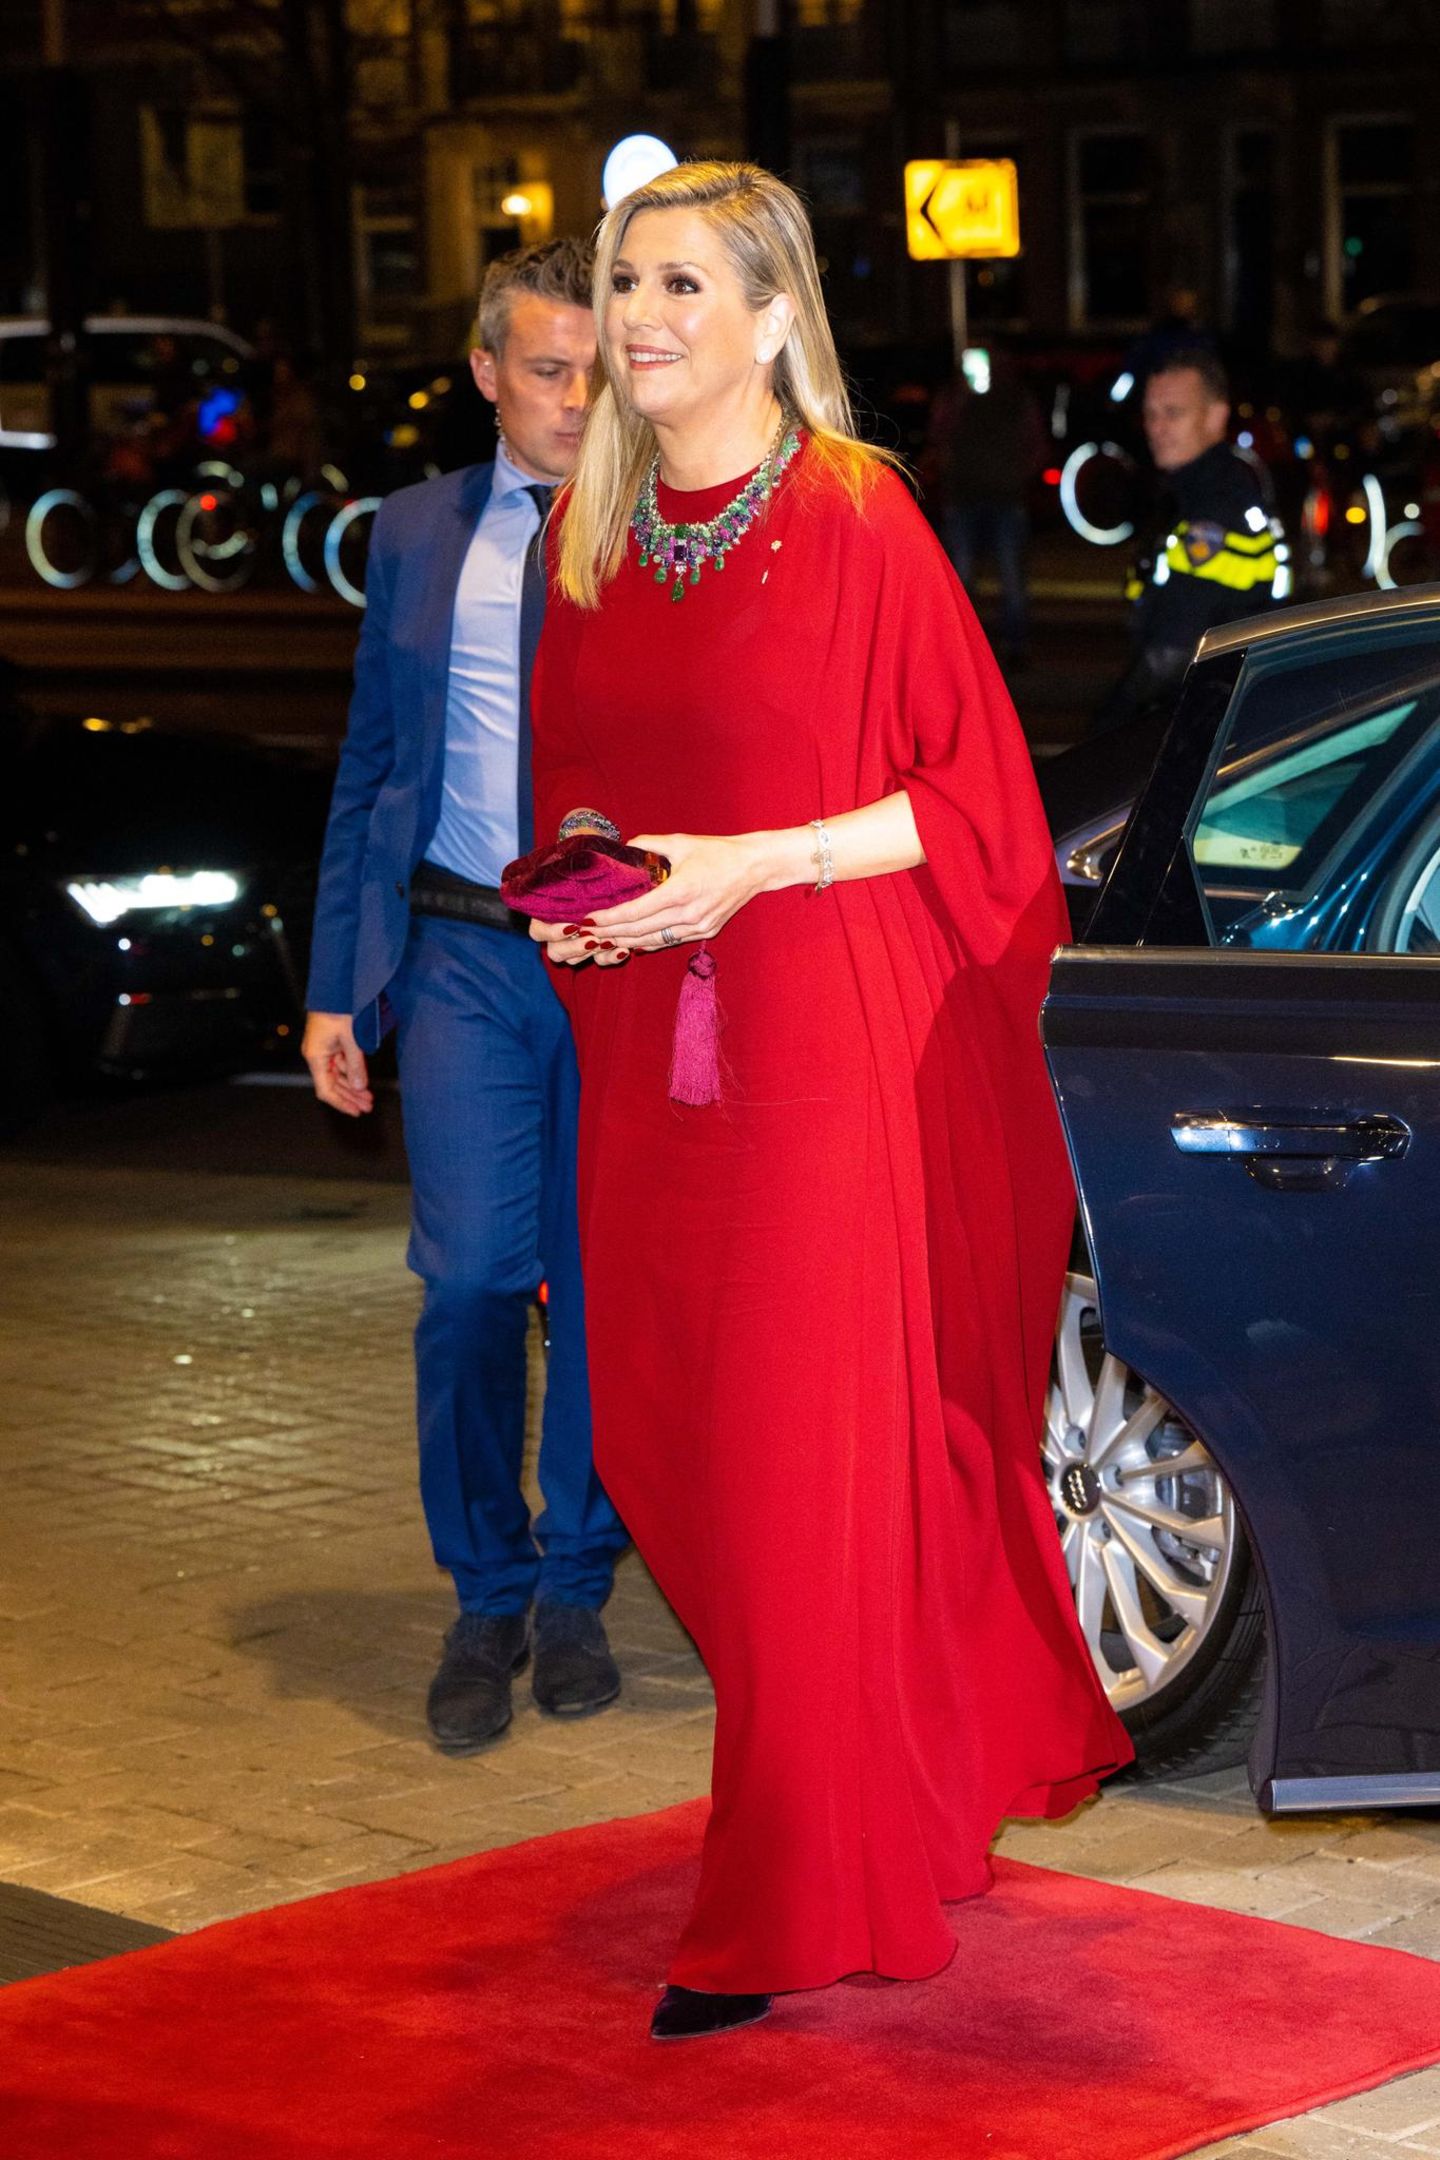 Bei einer Musical-Performance für den italienischen Präsidenten erscheint Máxima in einem edlen bodenlangen Kleid in Rot. Auch die Accessoires hält sie nicht dezent und kombiniert eine bunte Statement-Kette und eine Samt-Clutch in Bordeaux zu ihrem Look. So zieht die niederländische Königin mit Sicherheit bei jedem Theaterbesuch alle Blicke auf sich!